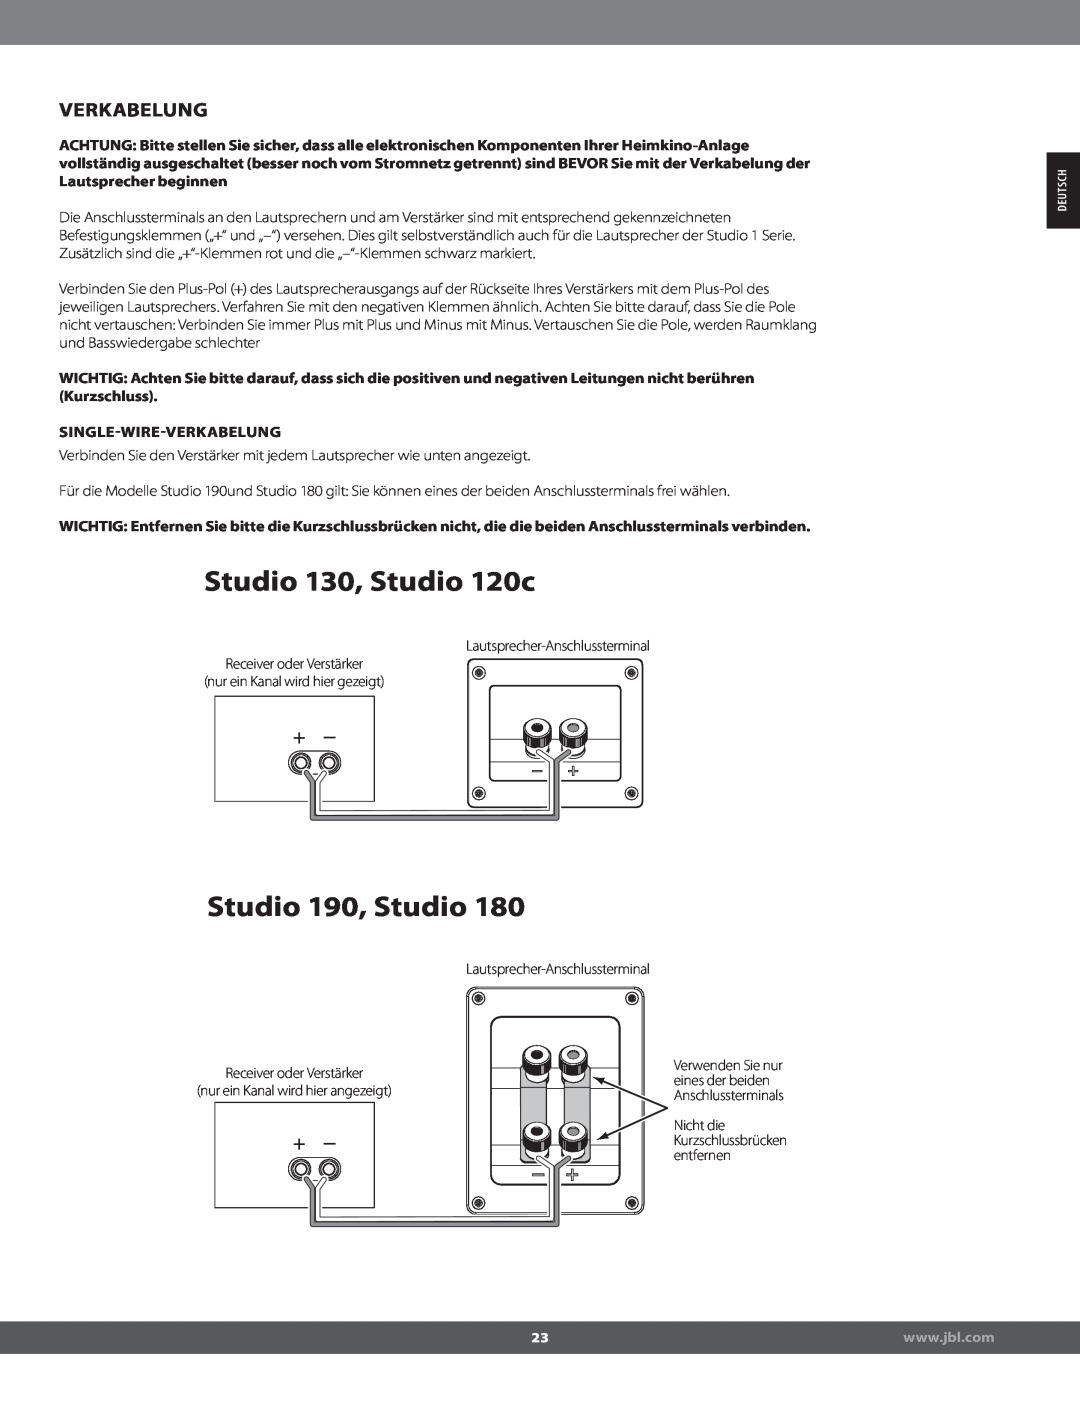 JBL STUDIO180 manual Verkabelung, Singlewireverkabelung, Studio 130, Studio 120c, Studio 190, Studio 